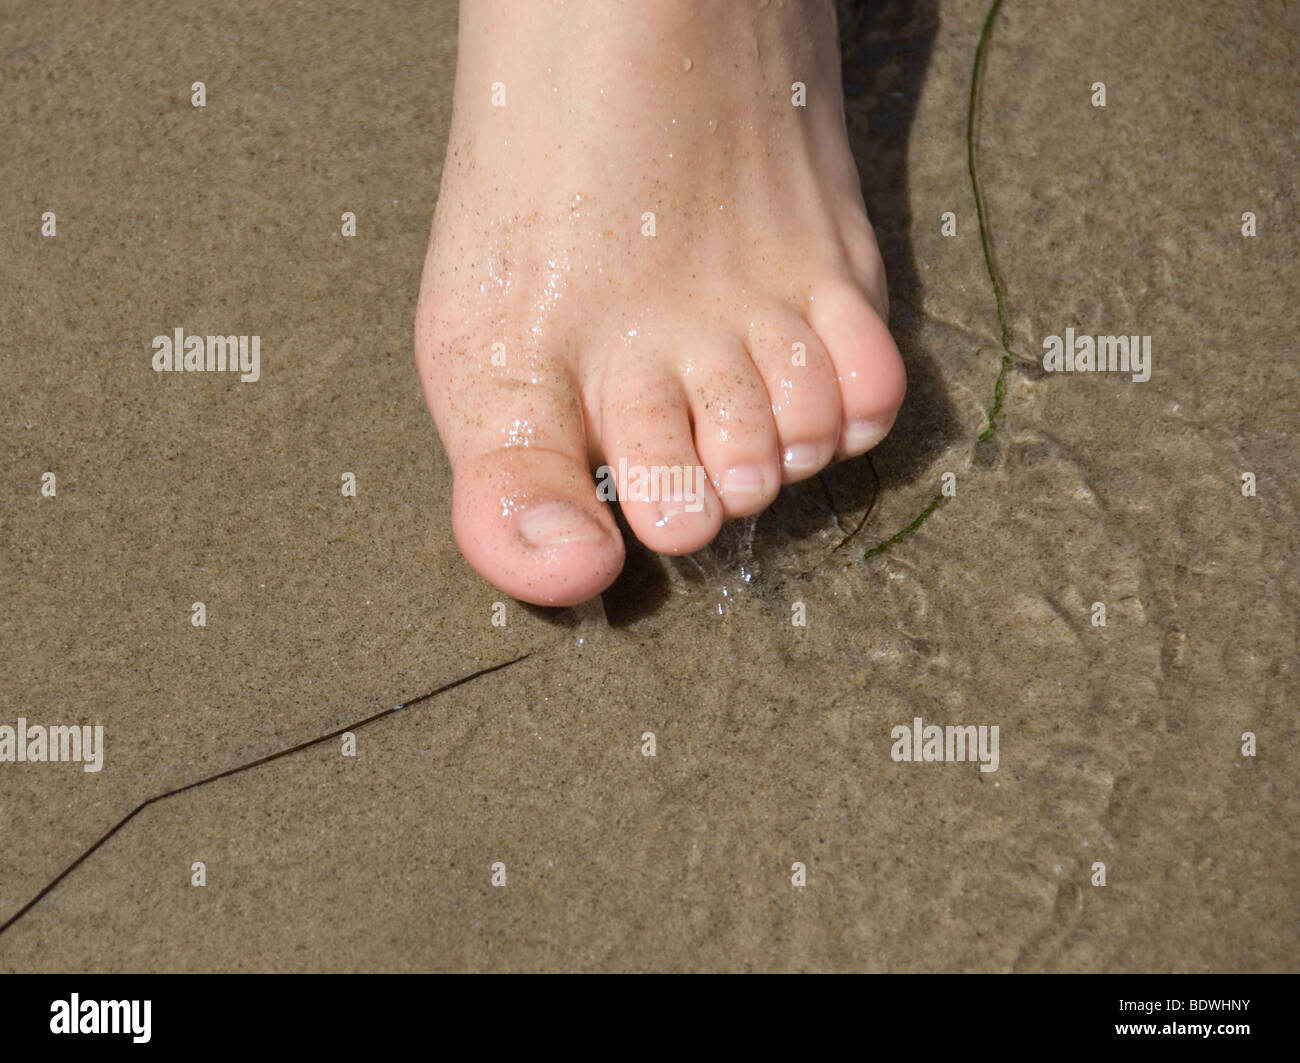 California beach feet